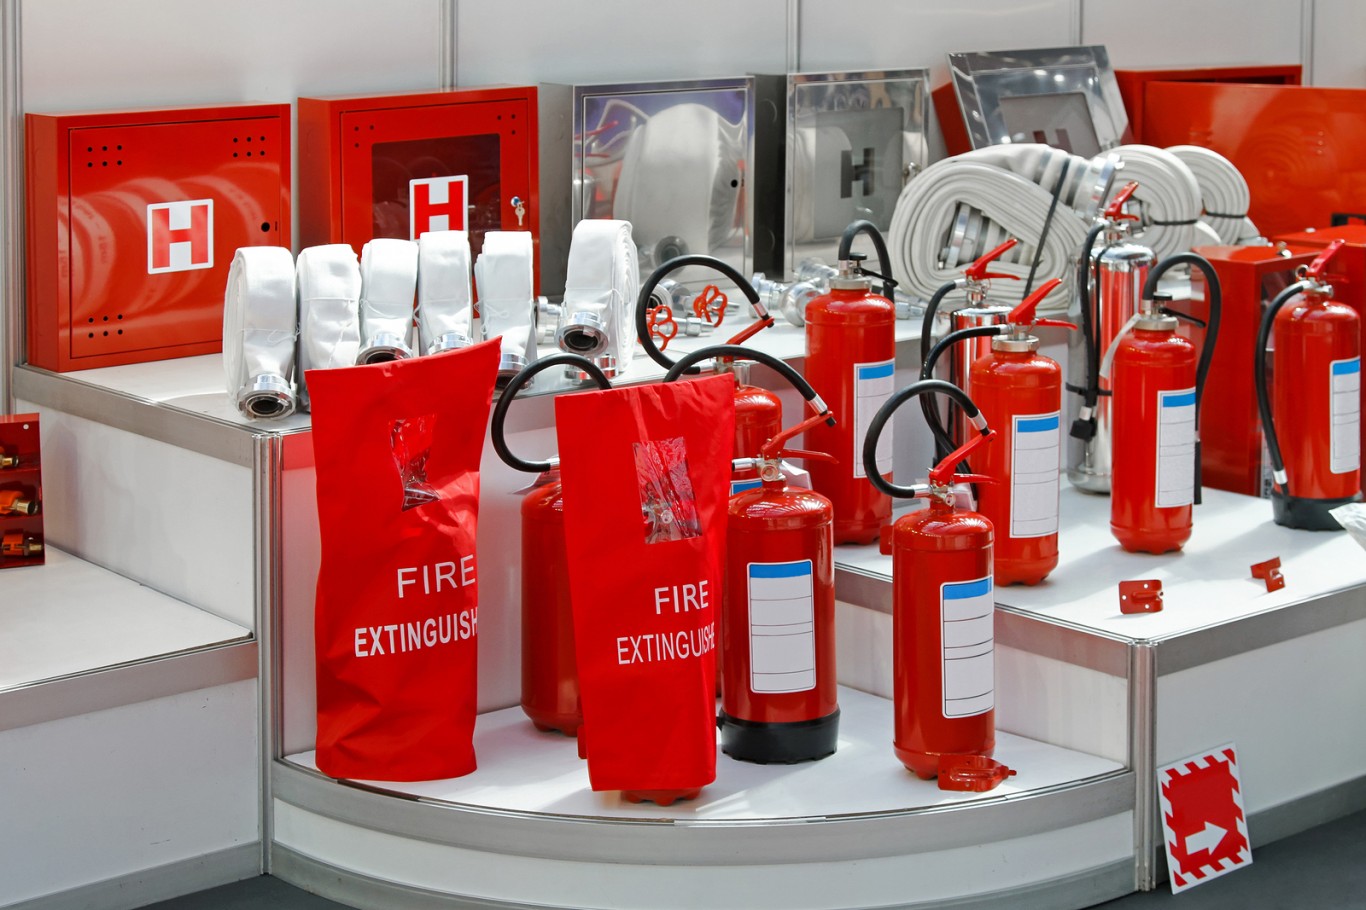 Bạn có thể hoàn toàn an tâm về chất lượng khi mua thiết bị phòng cháy chữa cháy giá rẻ tại Trang bảo hộ